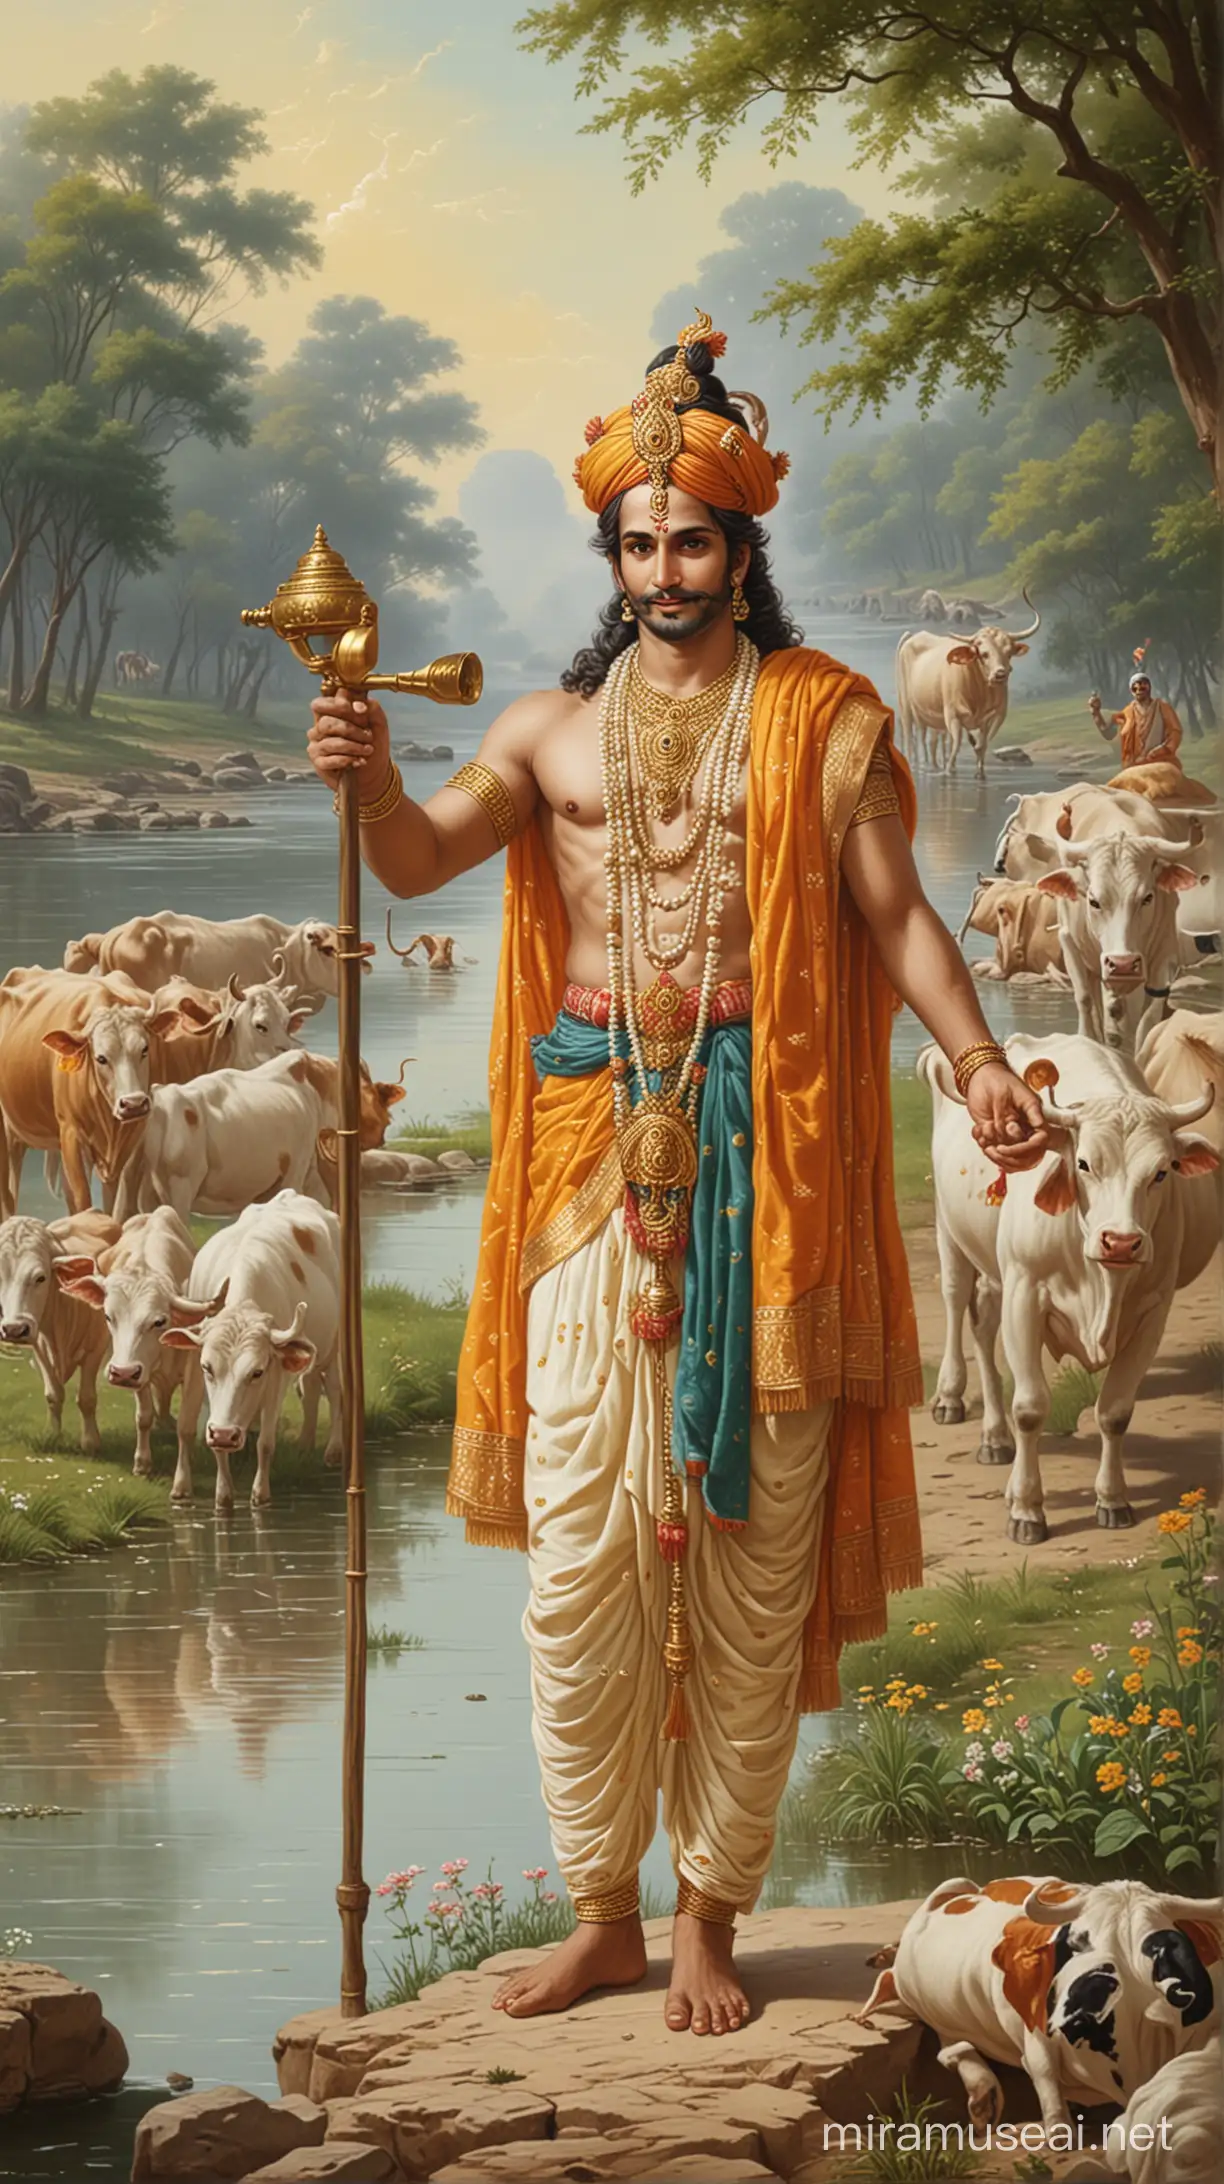 Krishan bhagwan vishnu ji with cows and whistle flute near bank of river